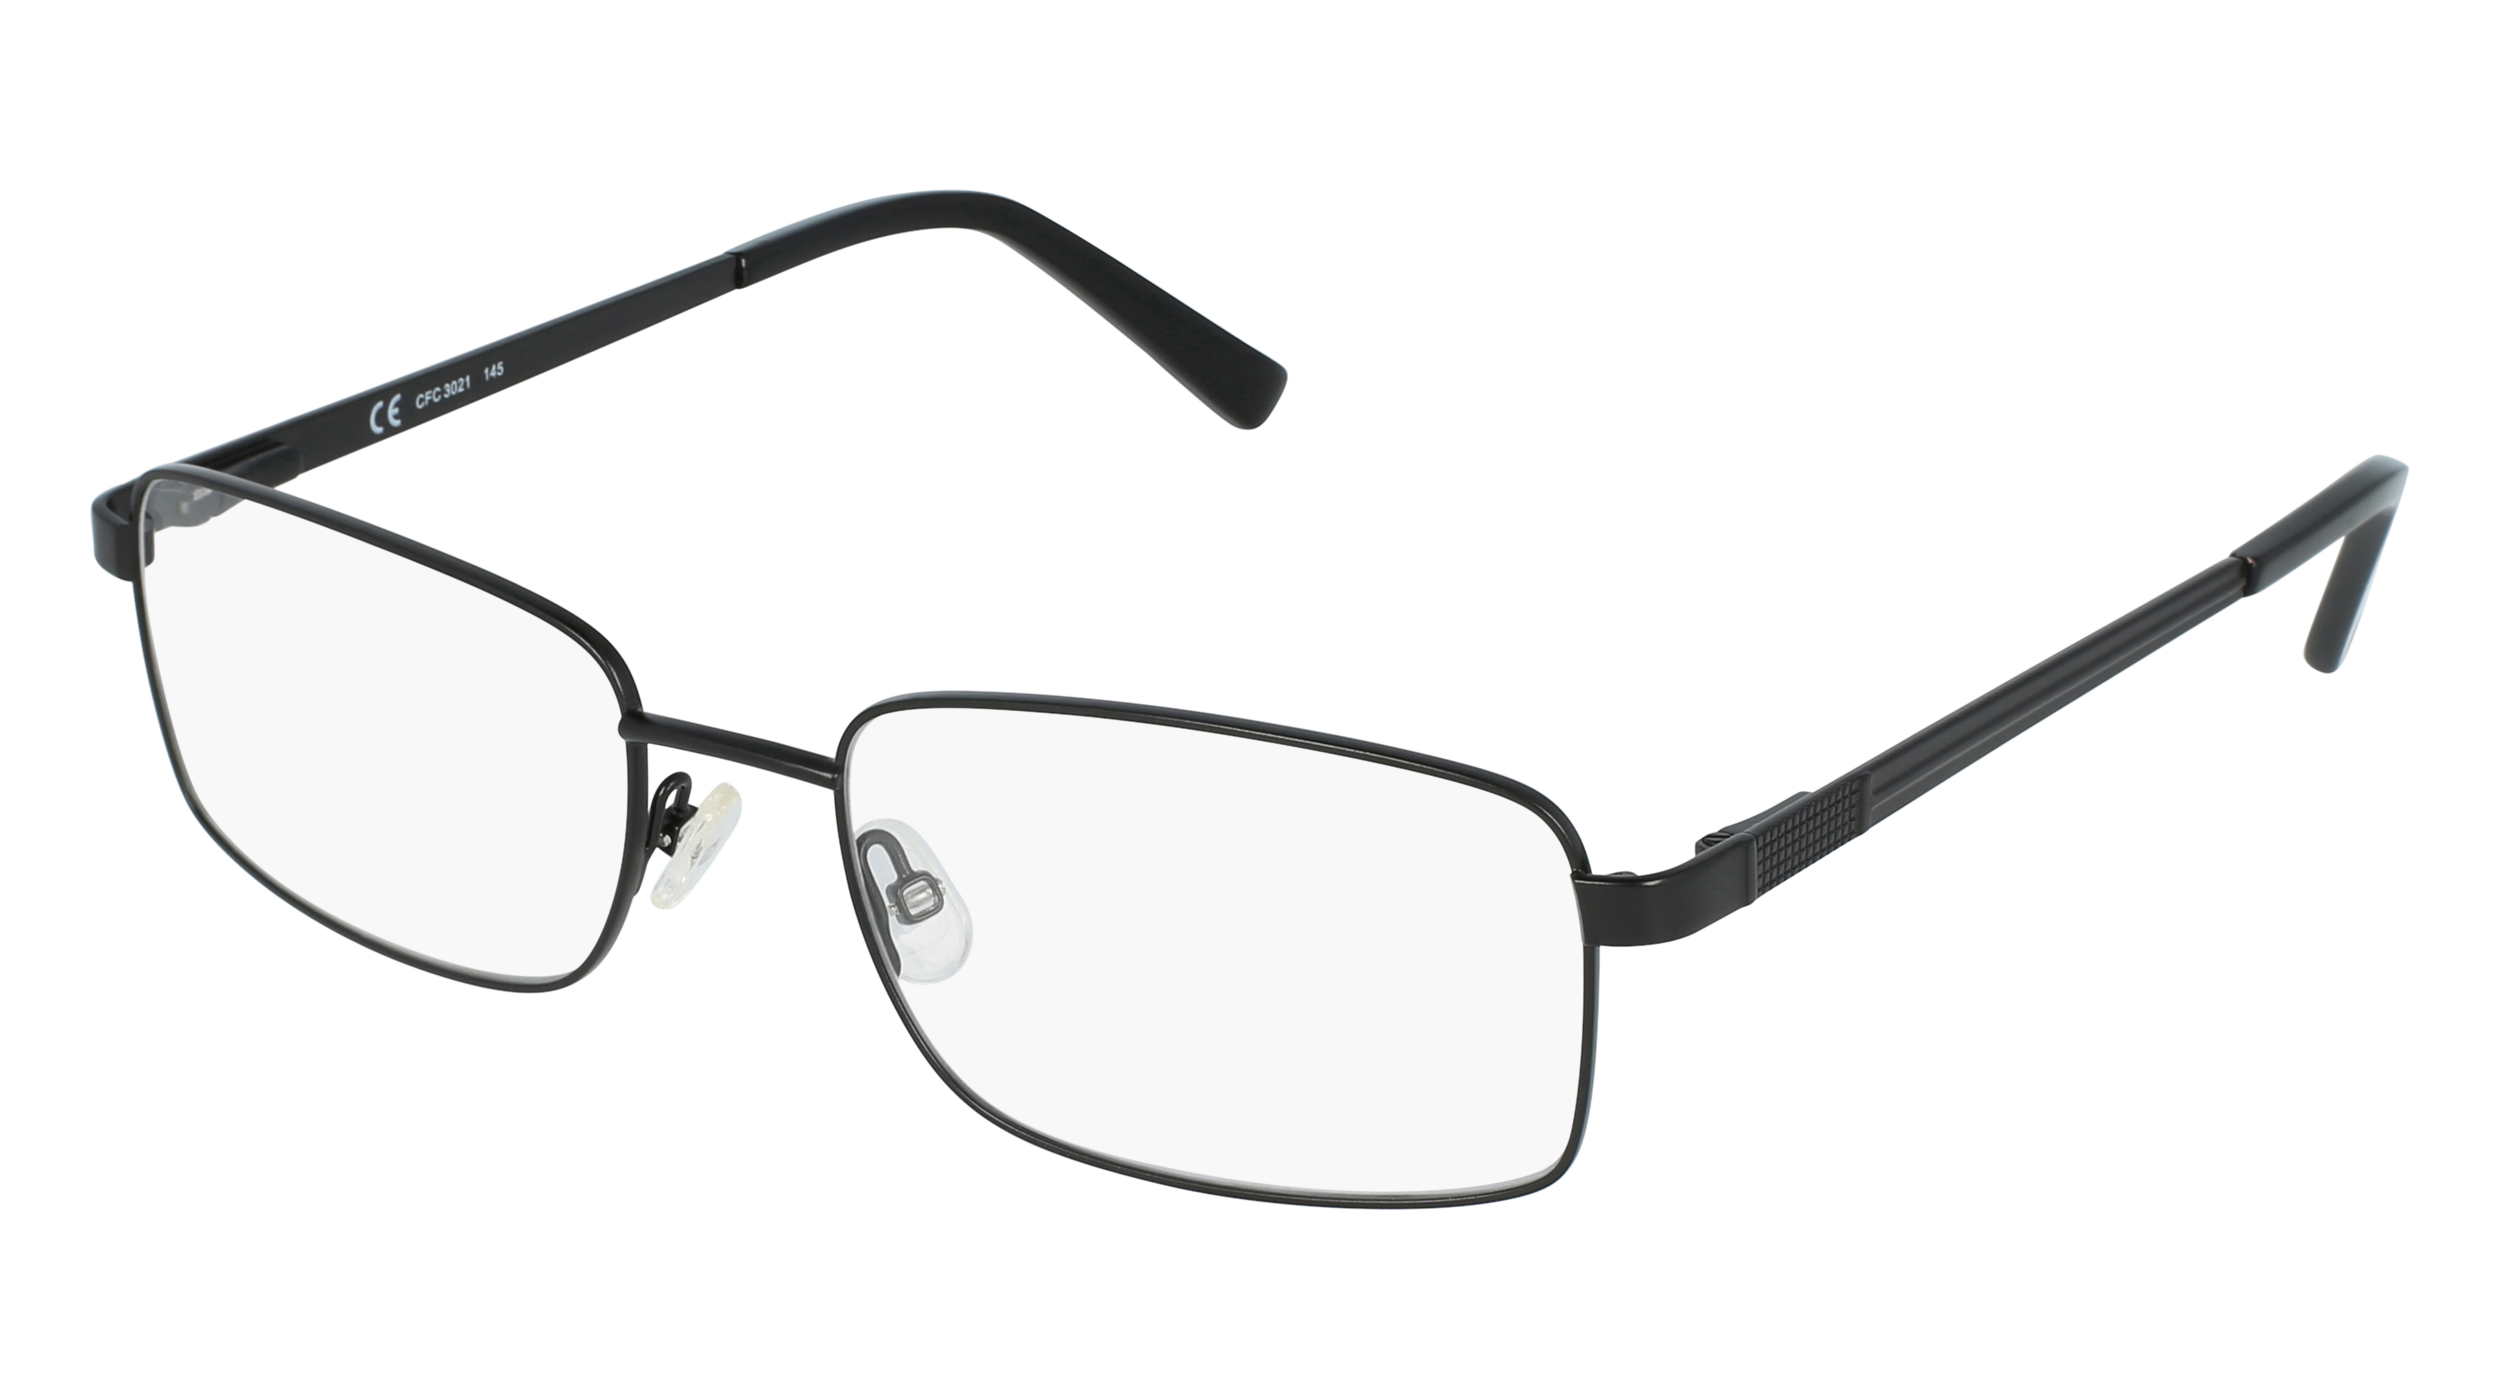 C CFC 3021 men's eyeglasses (from the side)